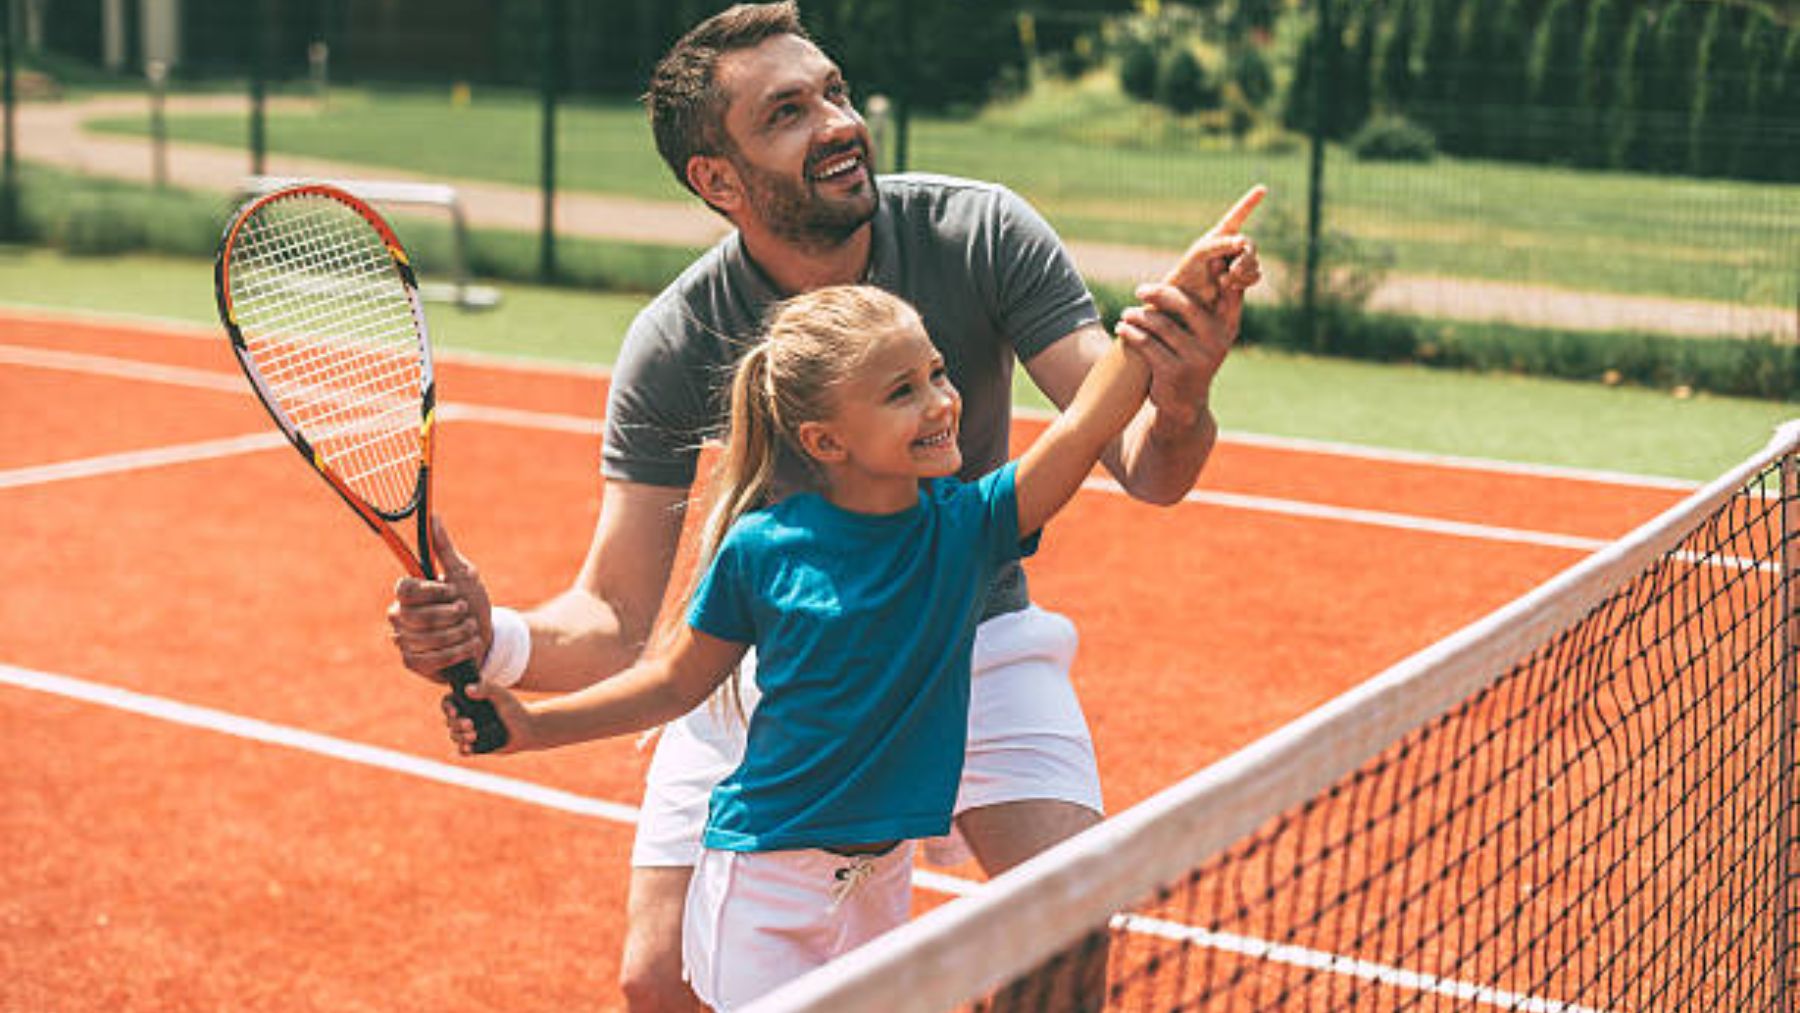 Los 3 mejores deportes para niños según su edad – Blog deportivo